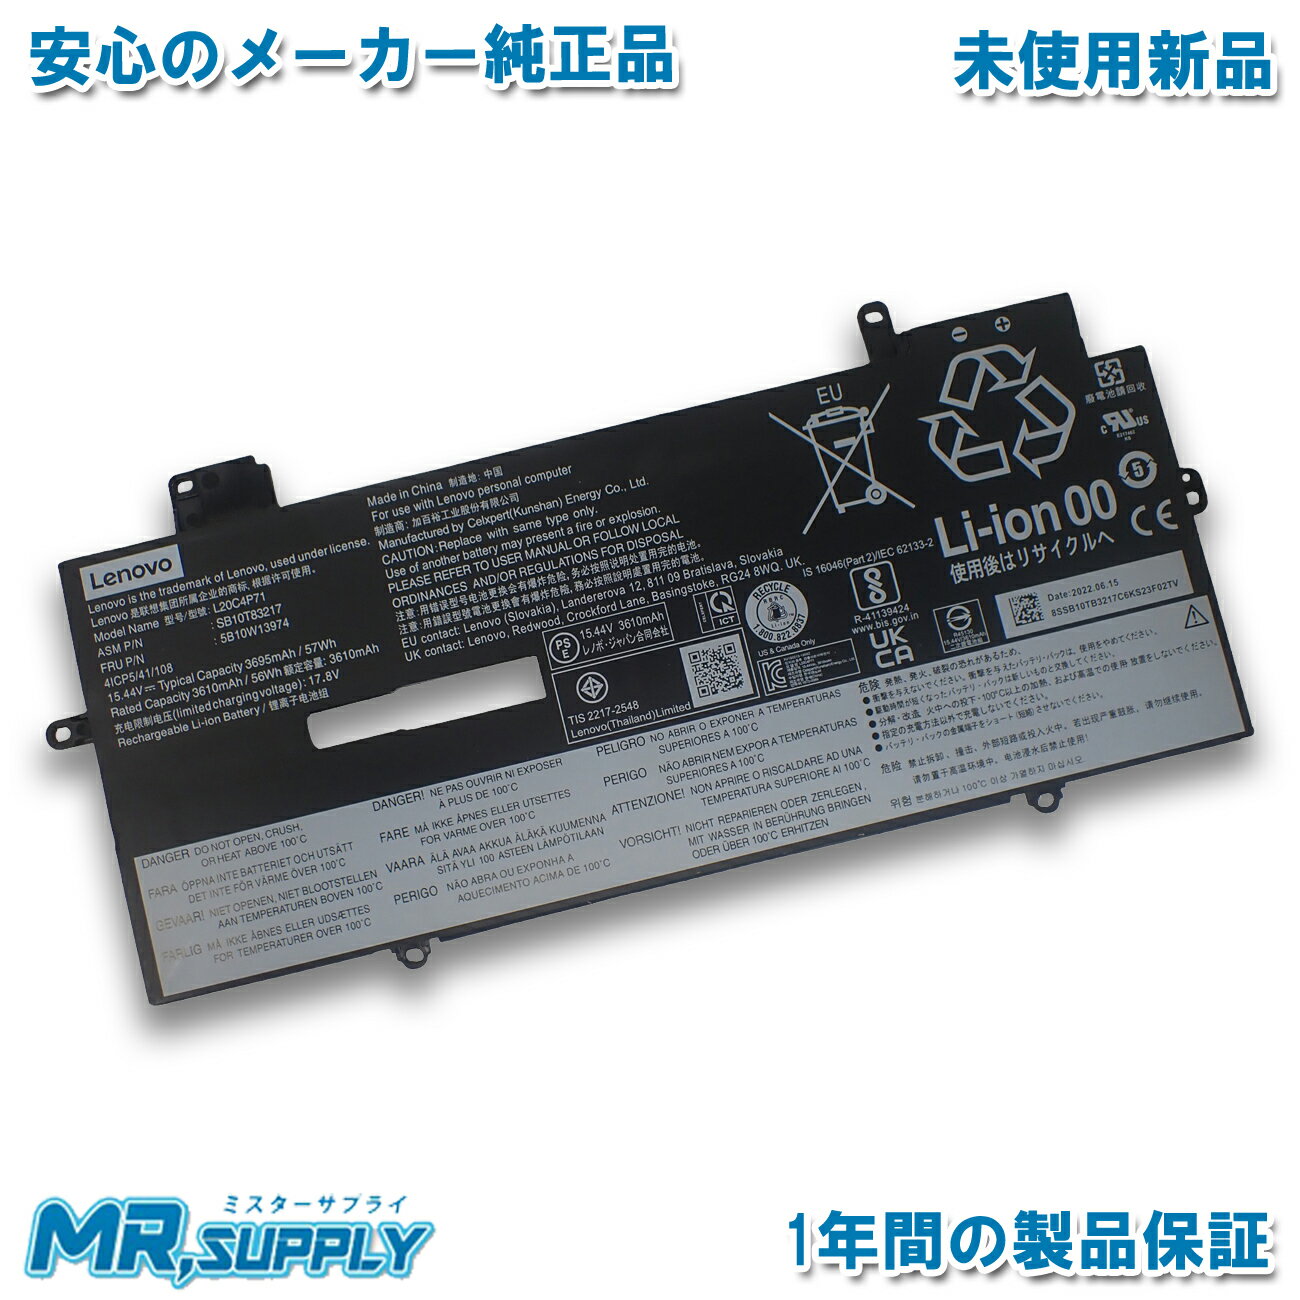 【純正】Rfjmw 11.1V 30WH or32Wh DELL デル ノート PC ノートパソコン 純正 交換バッテリー